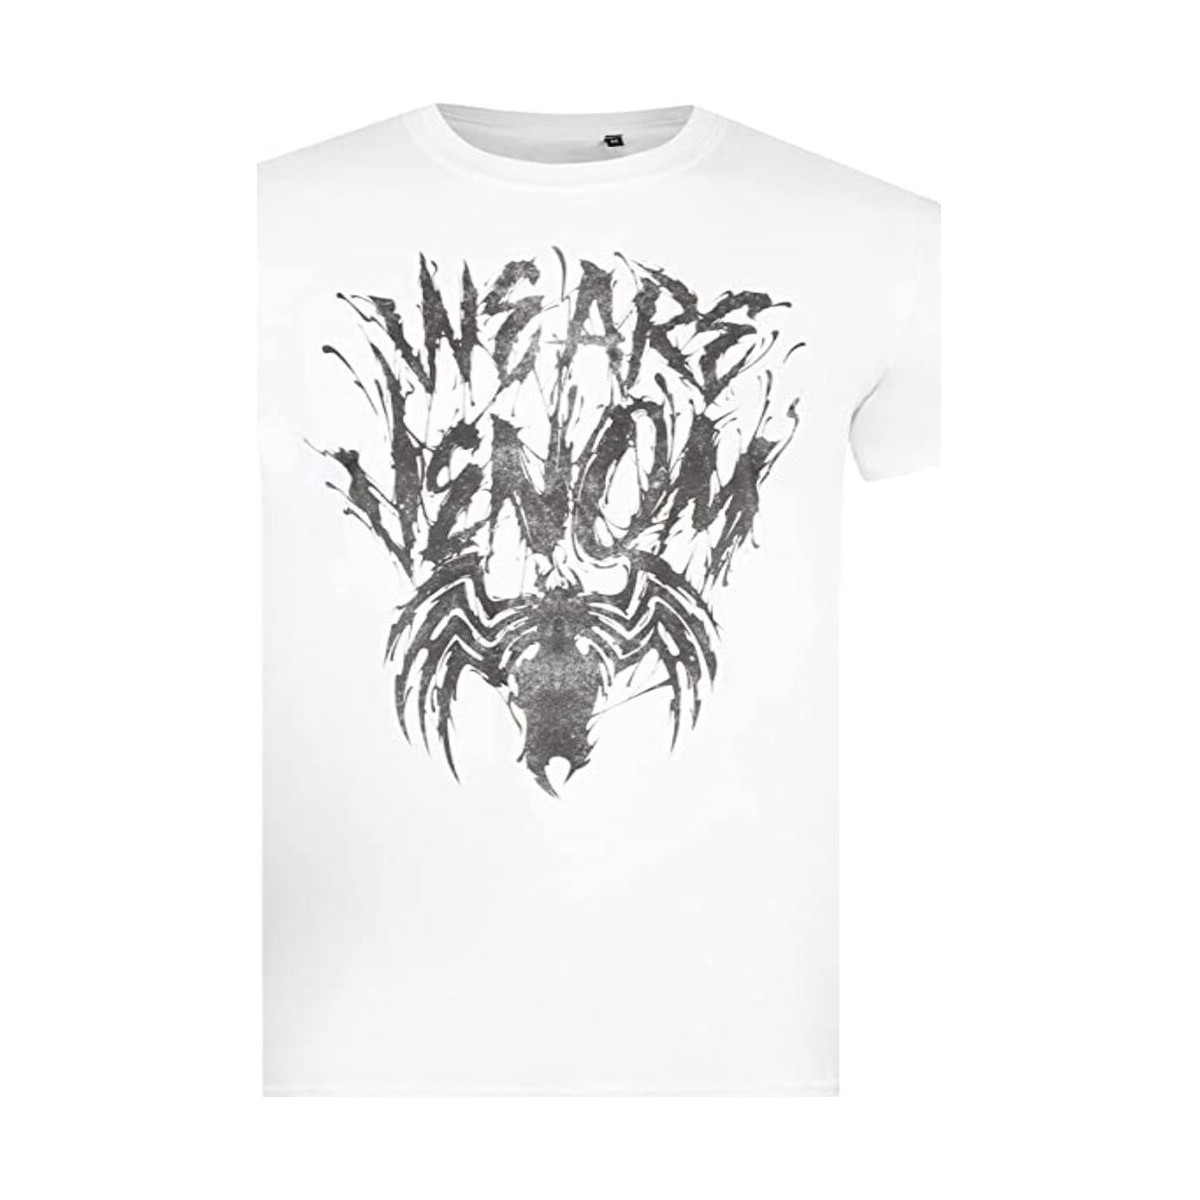 Vêtements Homme T-shirts manches longues Venom We Are Noir